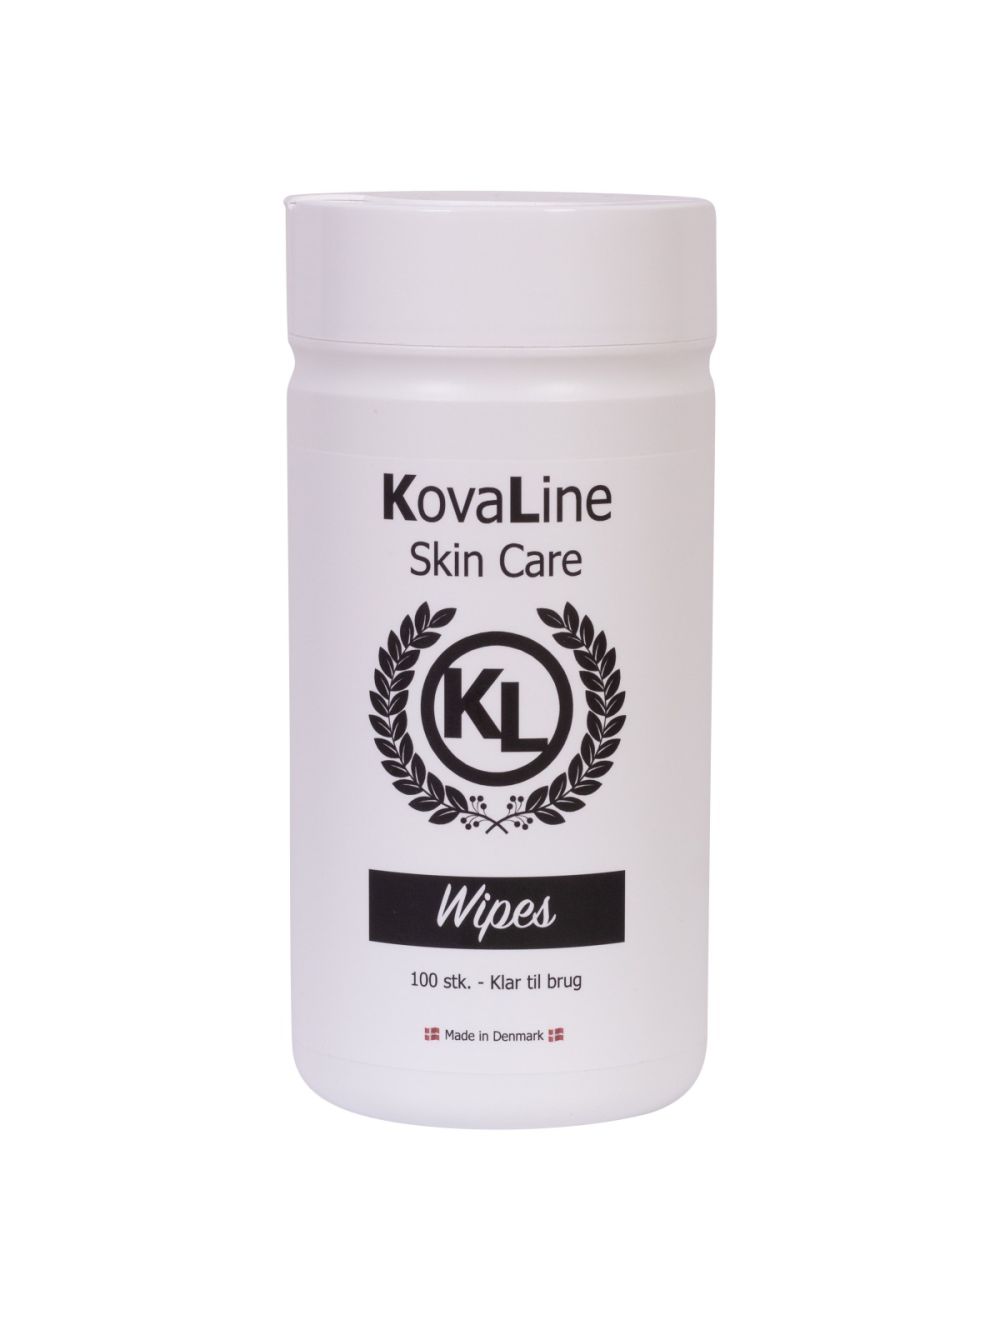 Kovaline Wipes RTU - Ready to use